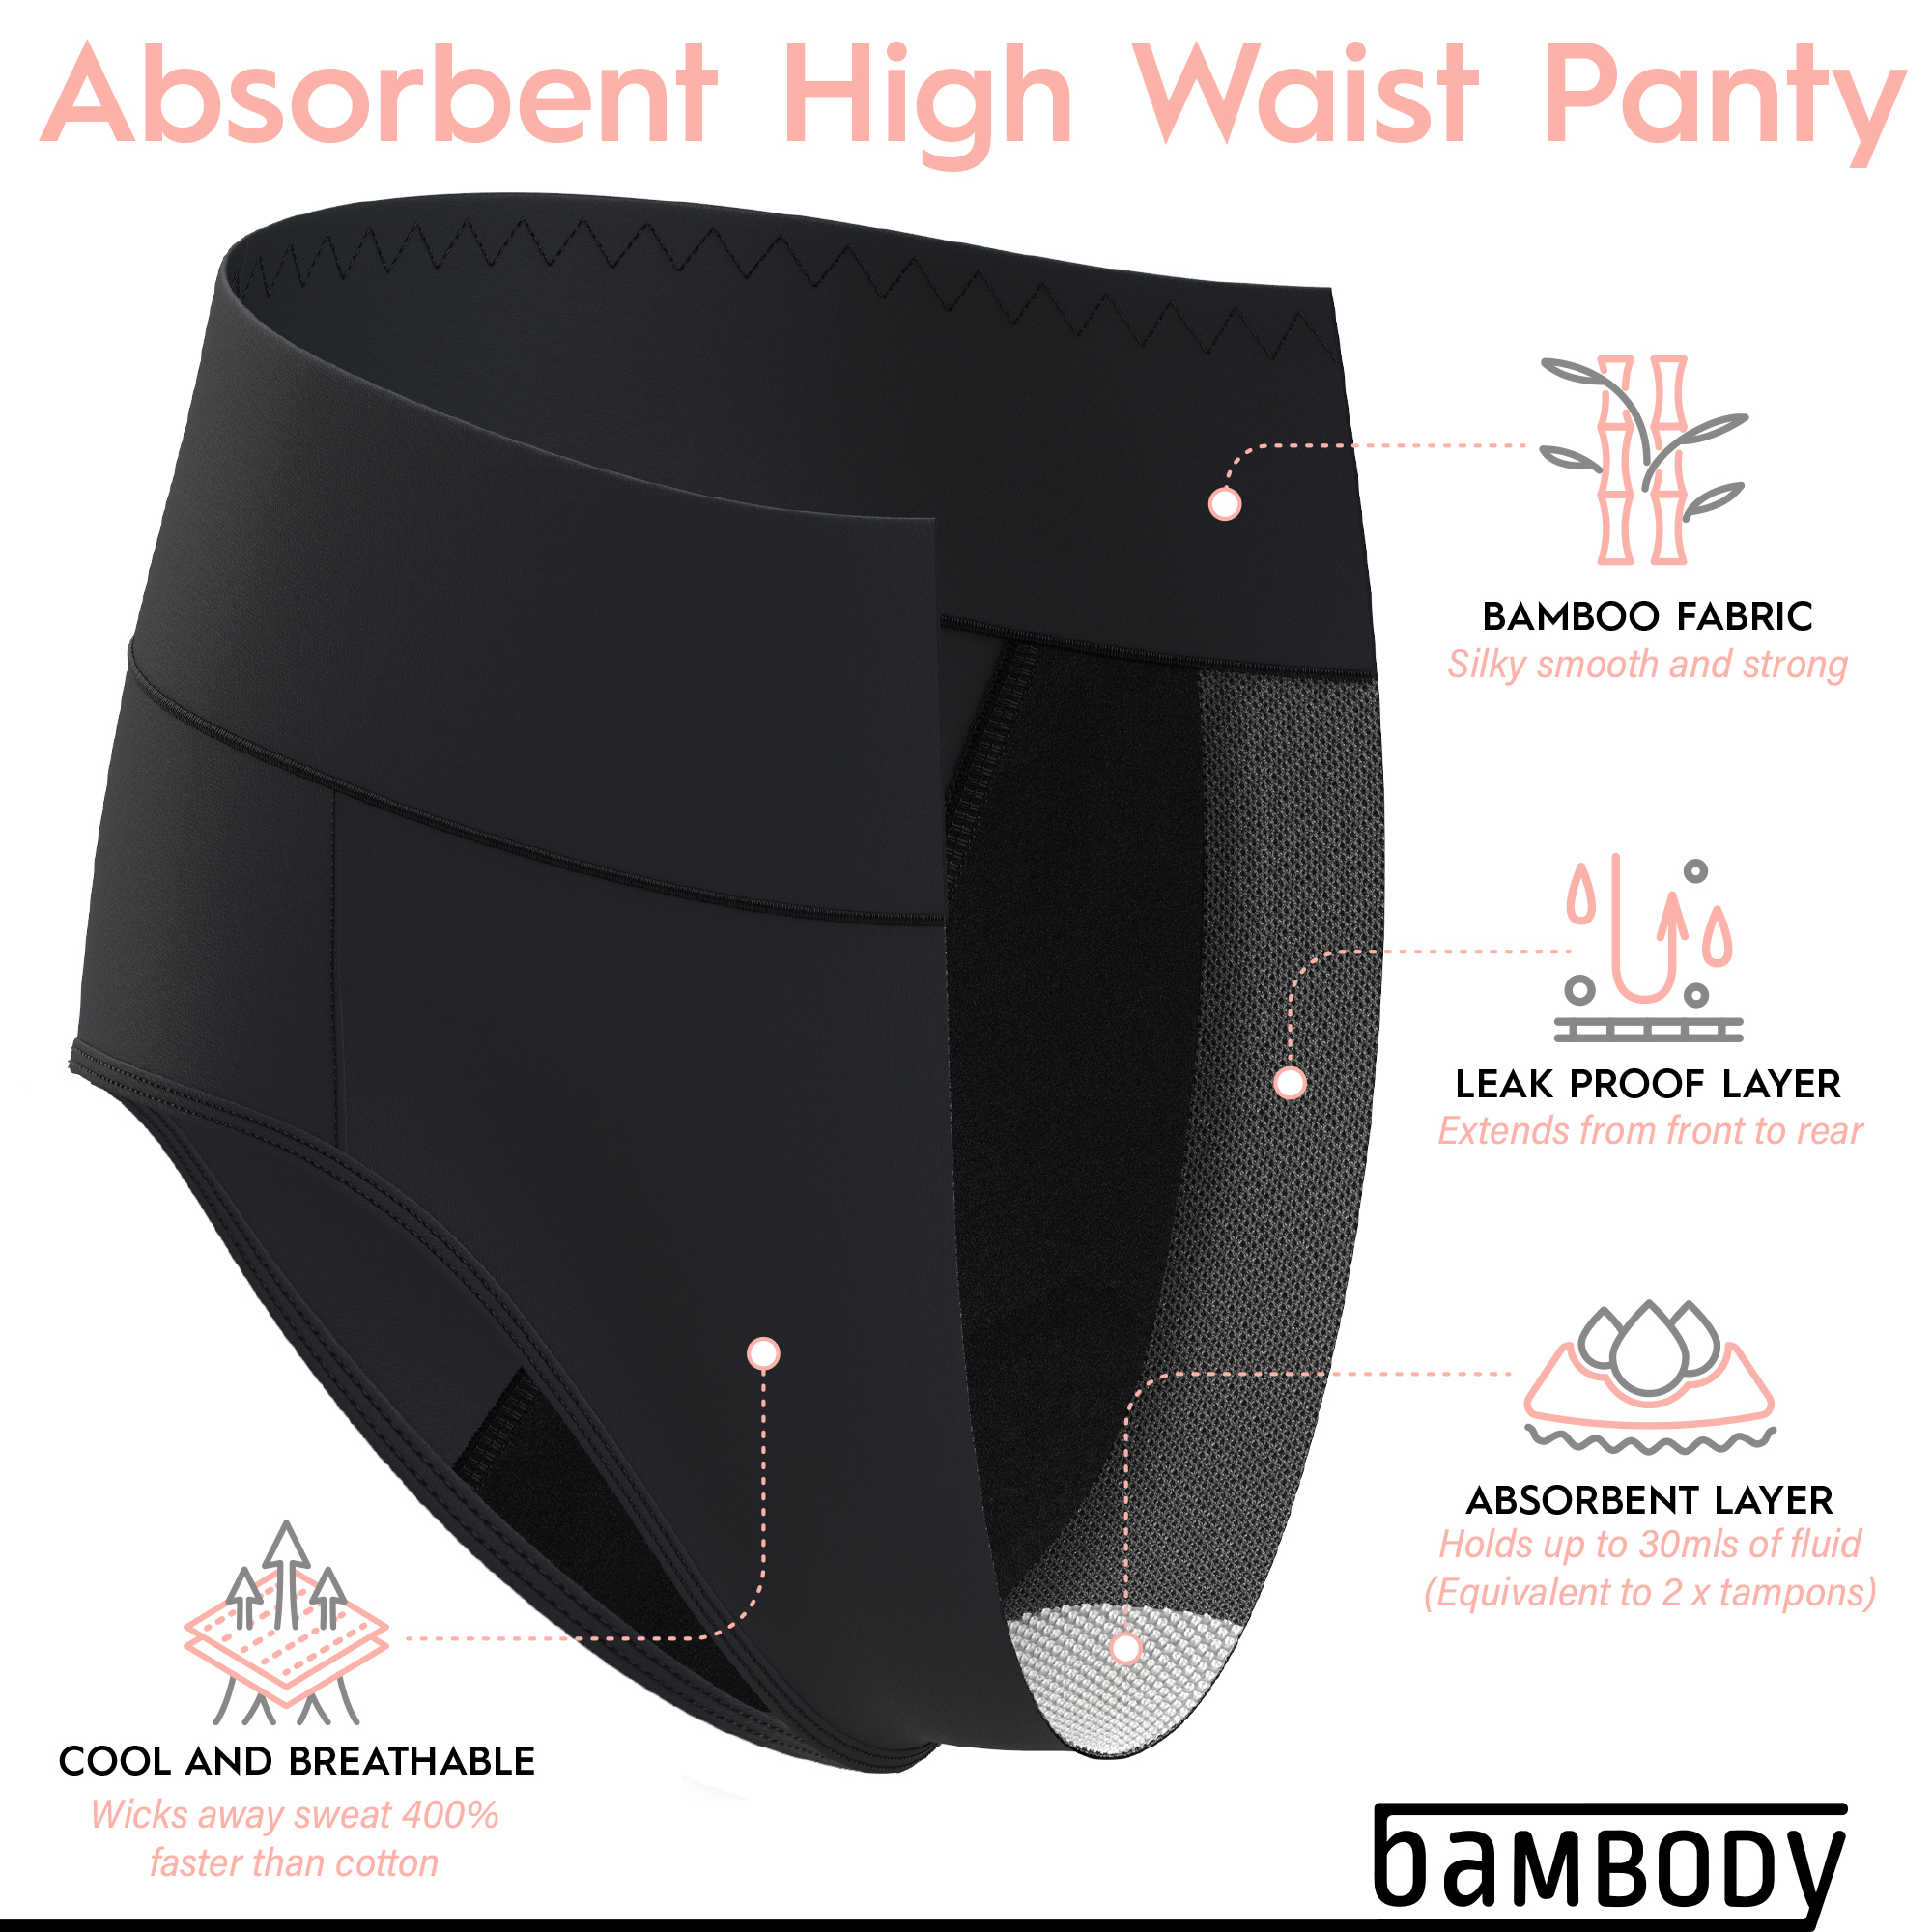 Absorbent High Waist - Bambody